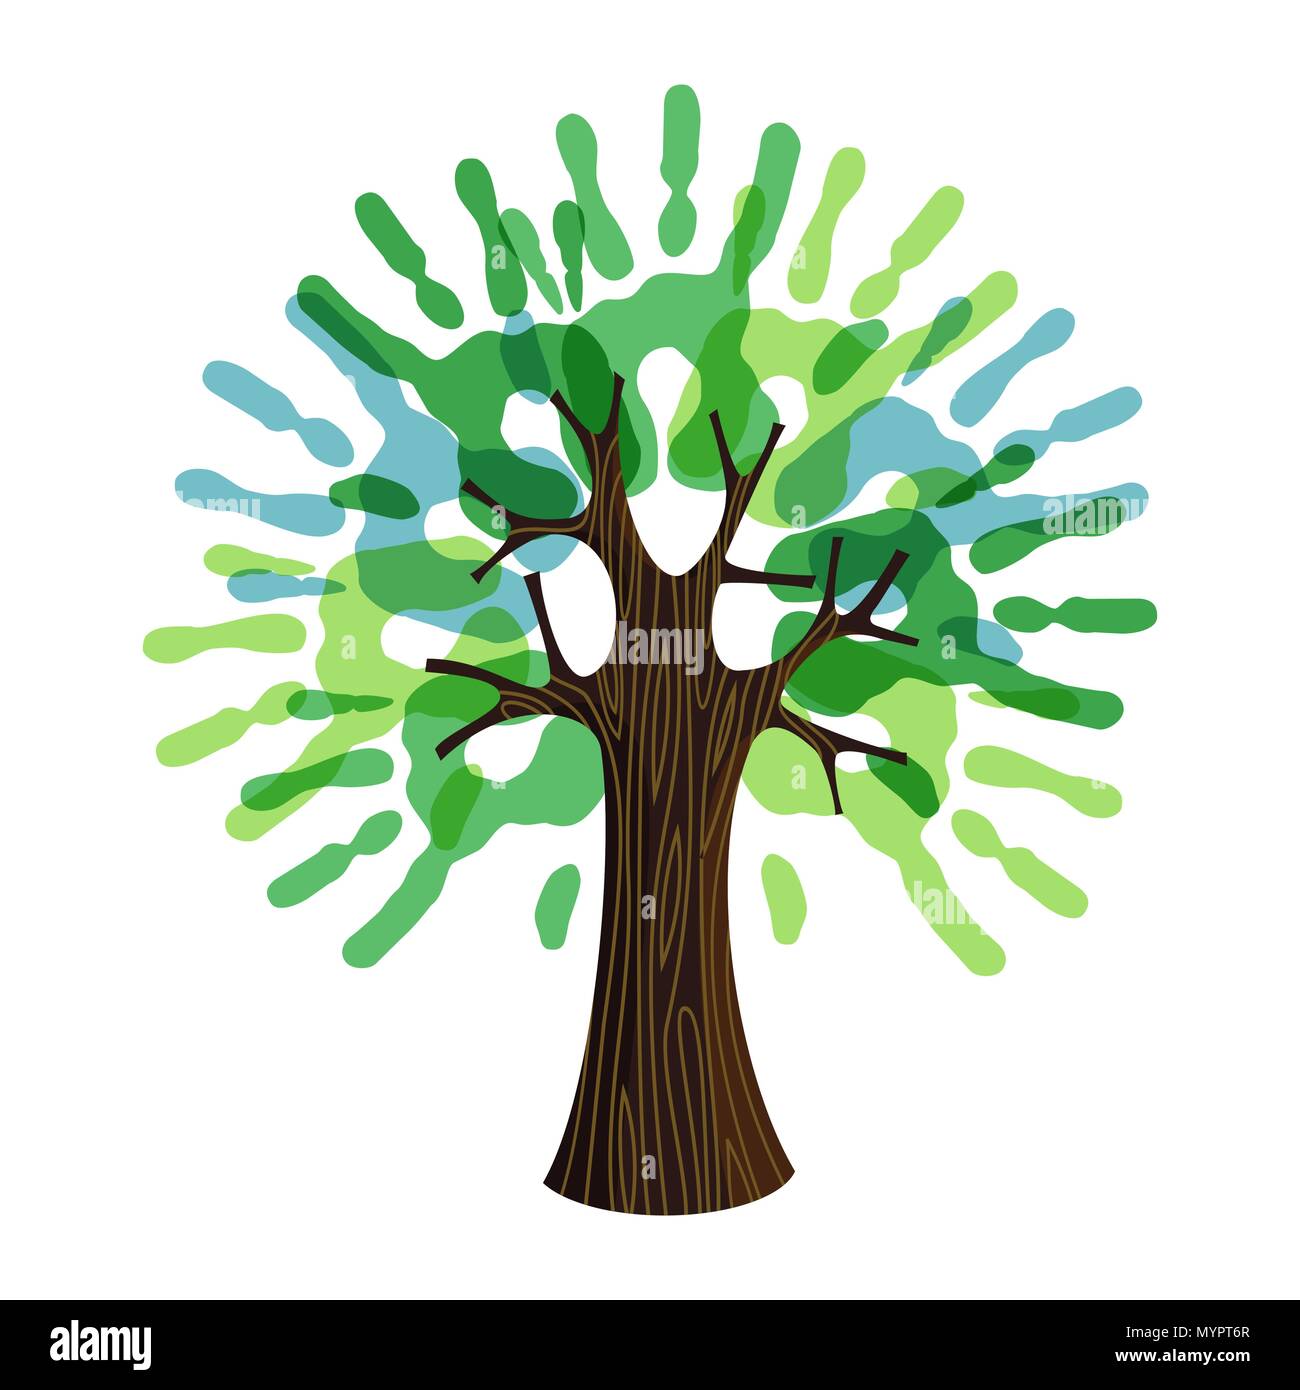 Simbolo di albero con mani di uomo come foglie verdi. Concetto illustrazione per organizzazione aiutano, ambiente progetto o il lavoro sociale. EPS10 vettore. Illustrazione Vettoriale